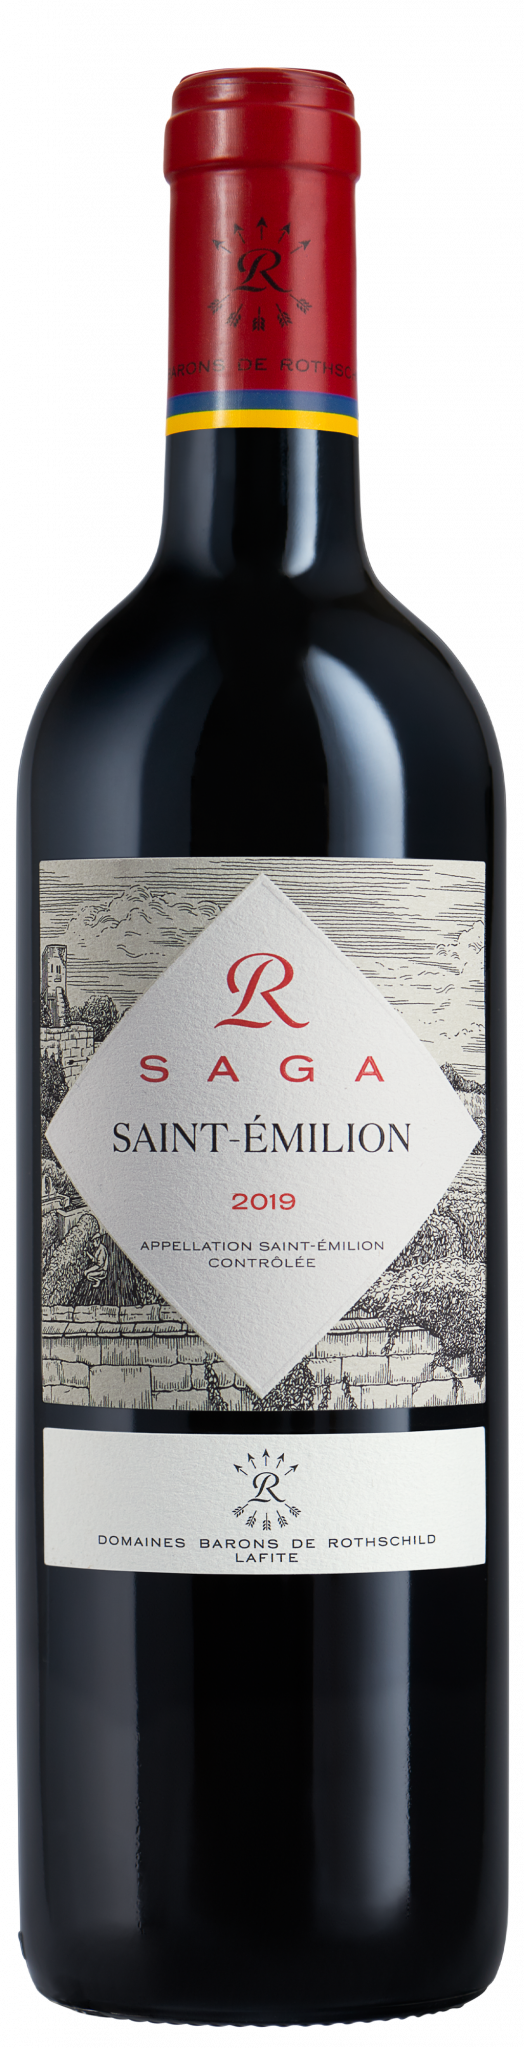 Saga R Saint-Emilion